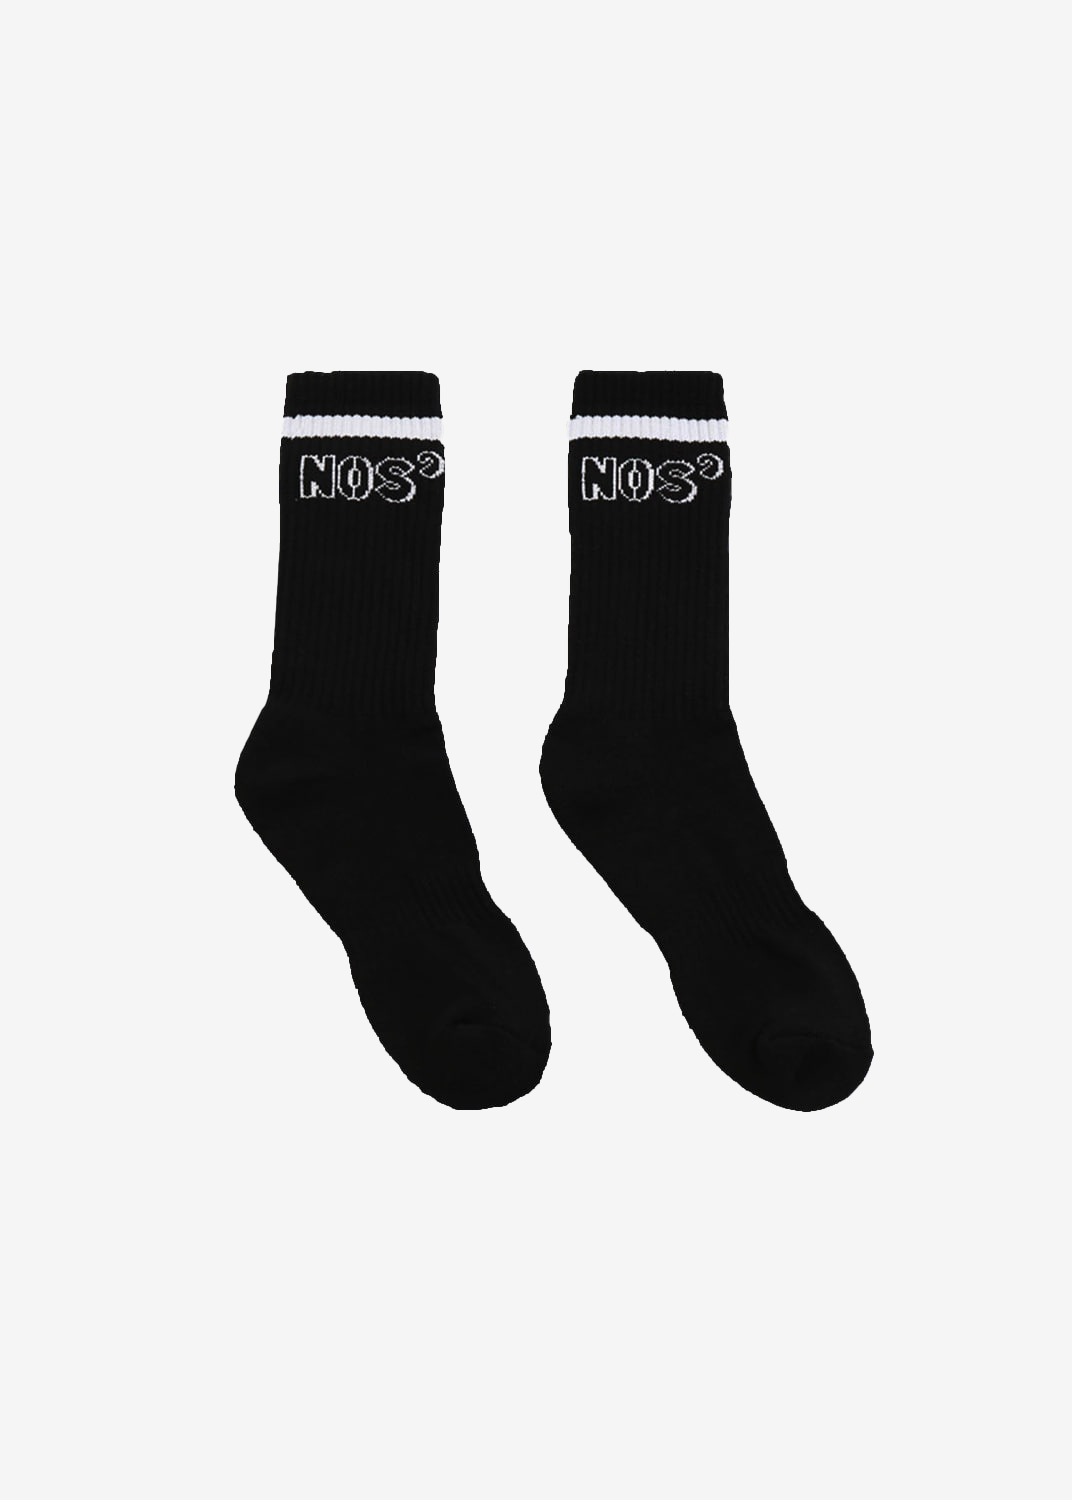 Logo socks 2 IN 1PACK